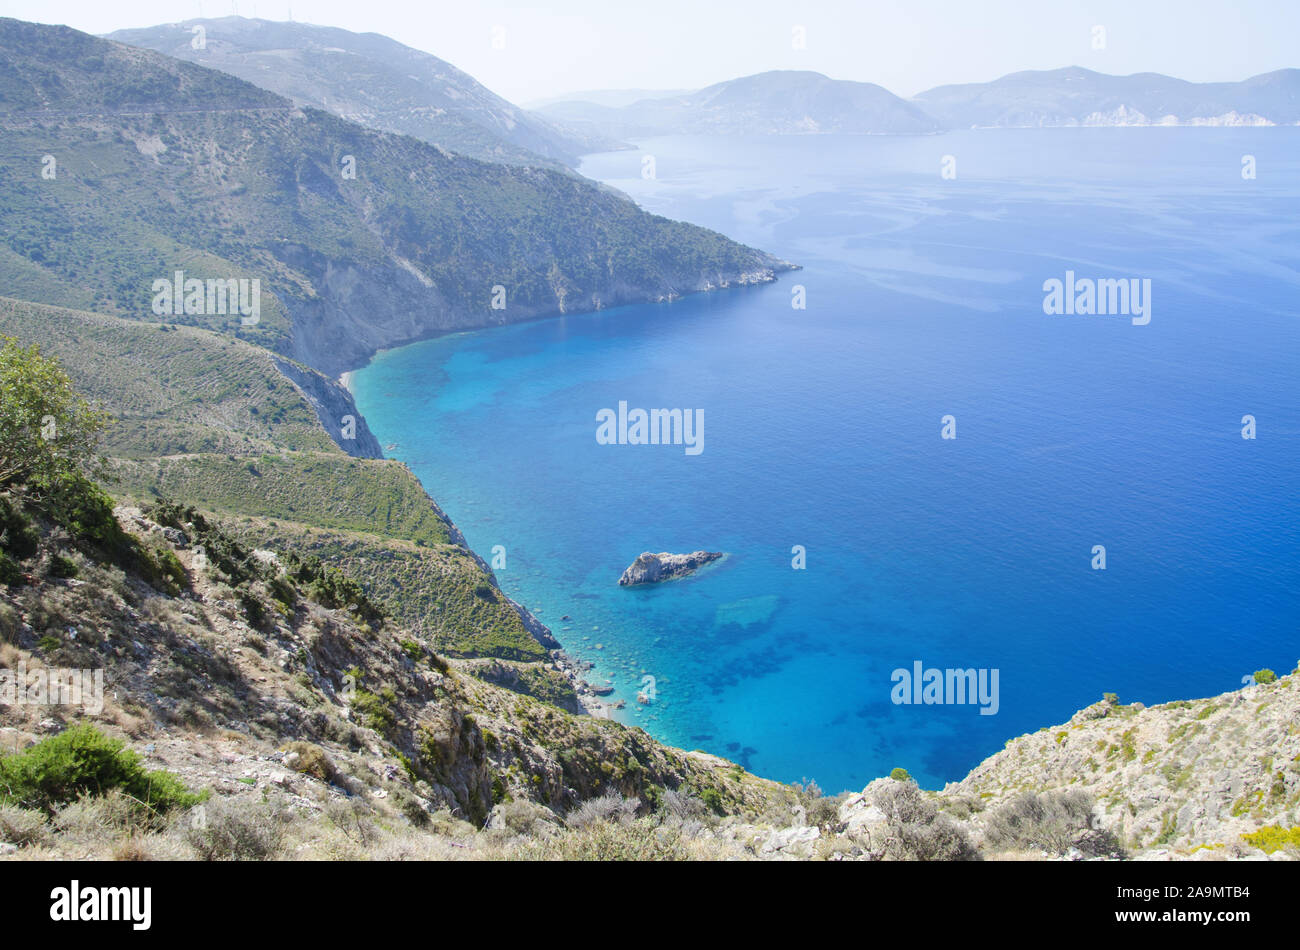 Azure waters of Mediterranean Sea near mountainous Crete island